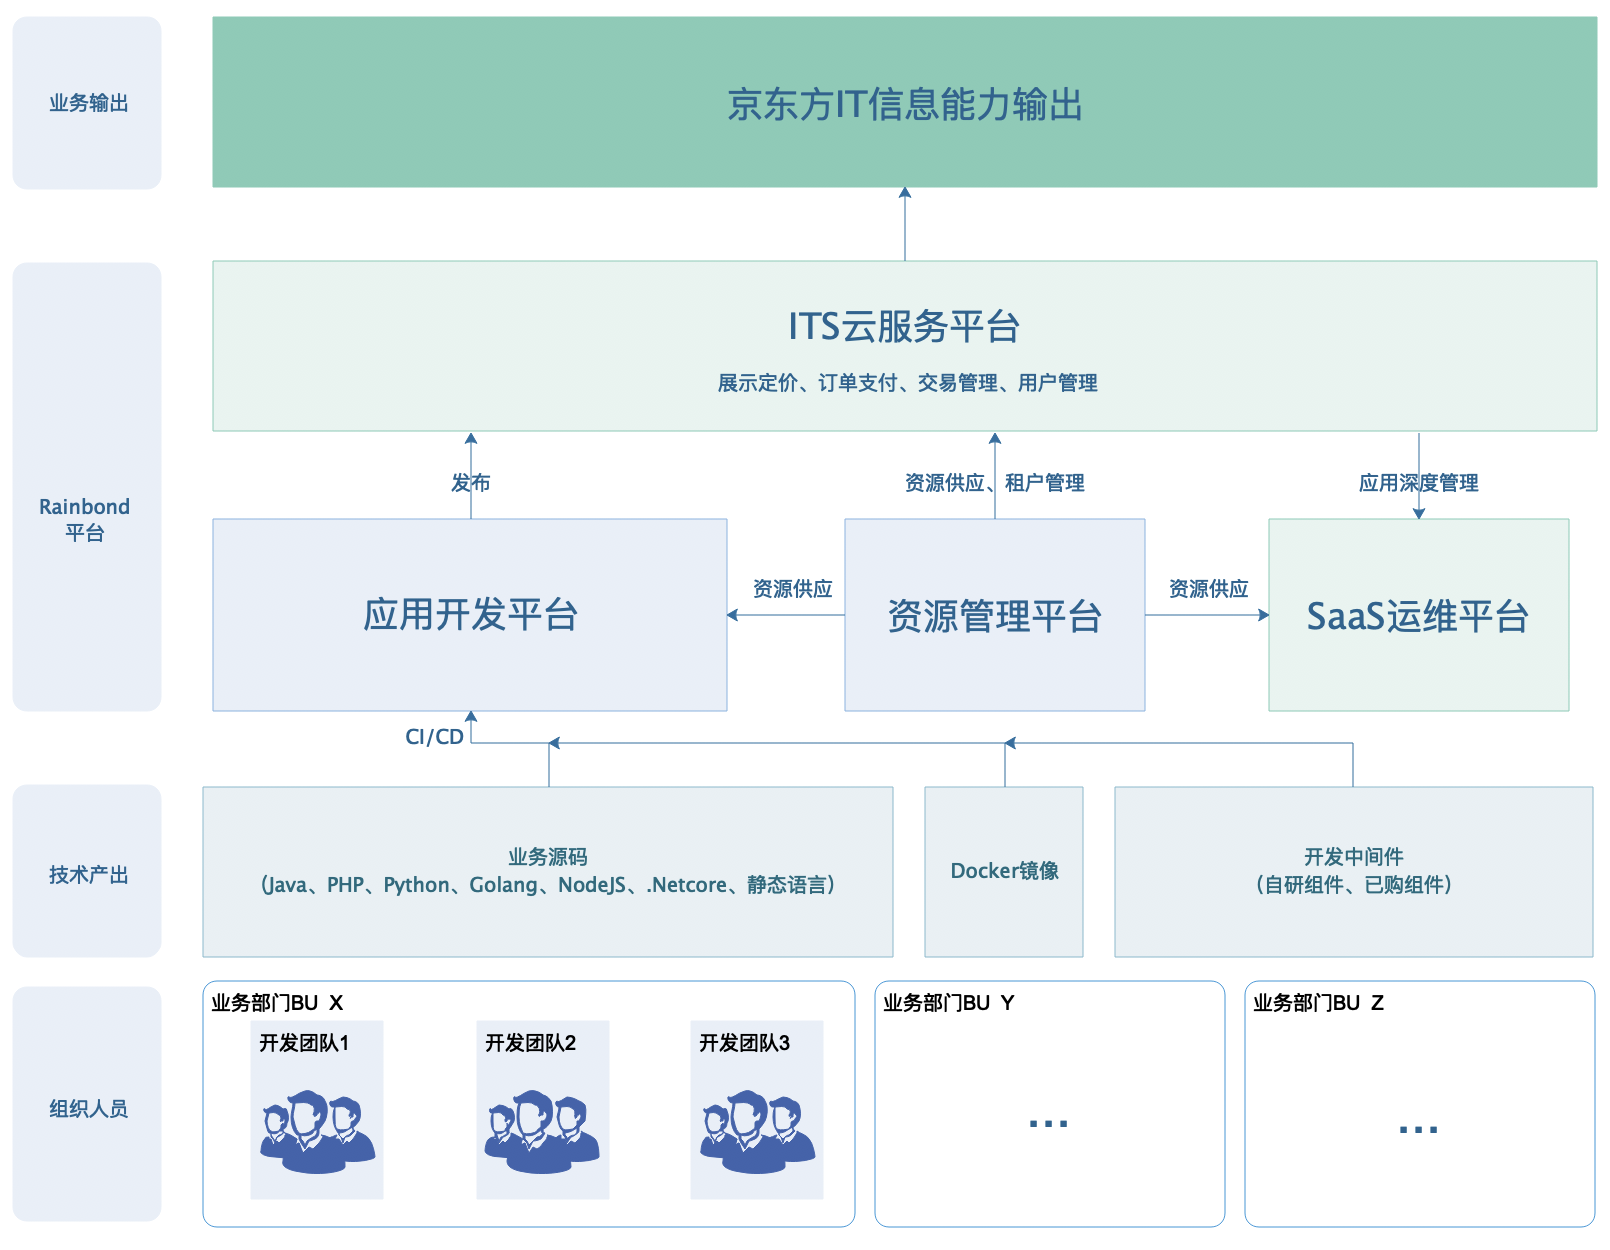 ITS云服务平台业务流程图